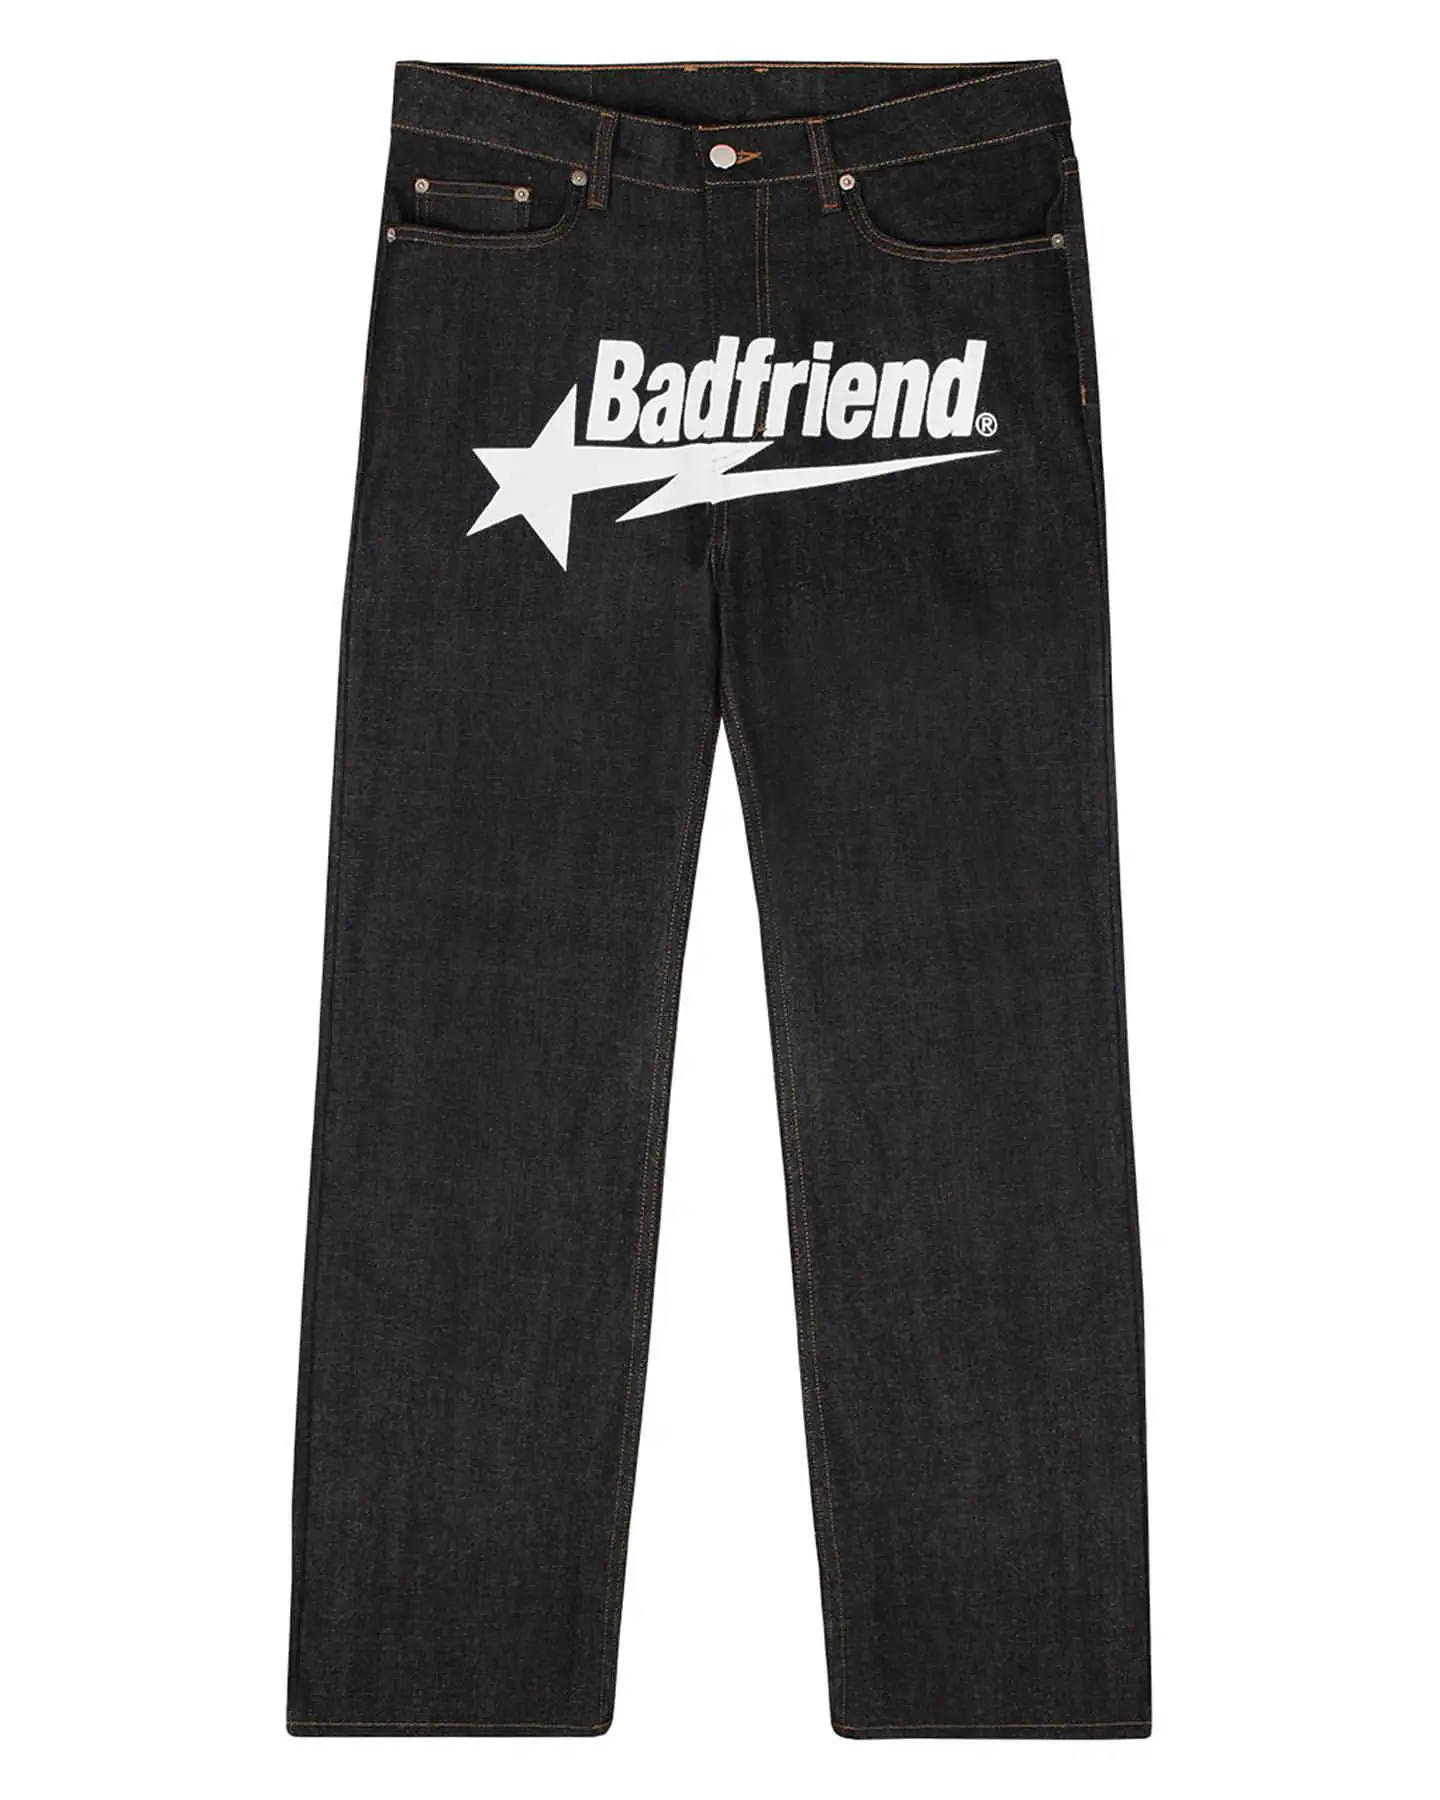 

Джинсы Y2k в стиле хип-хоп, Мешковатые Черные Брюки с надписью Badfriend, новинка 2023, модные брюки в стиле Харадзюку с широкими штанинами в стиле панк-рок, уличная одежда